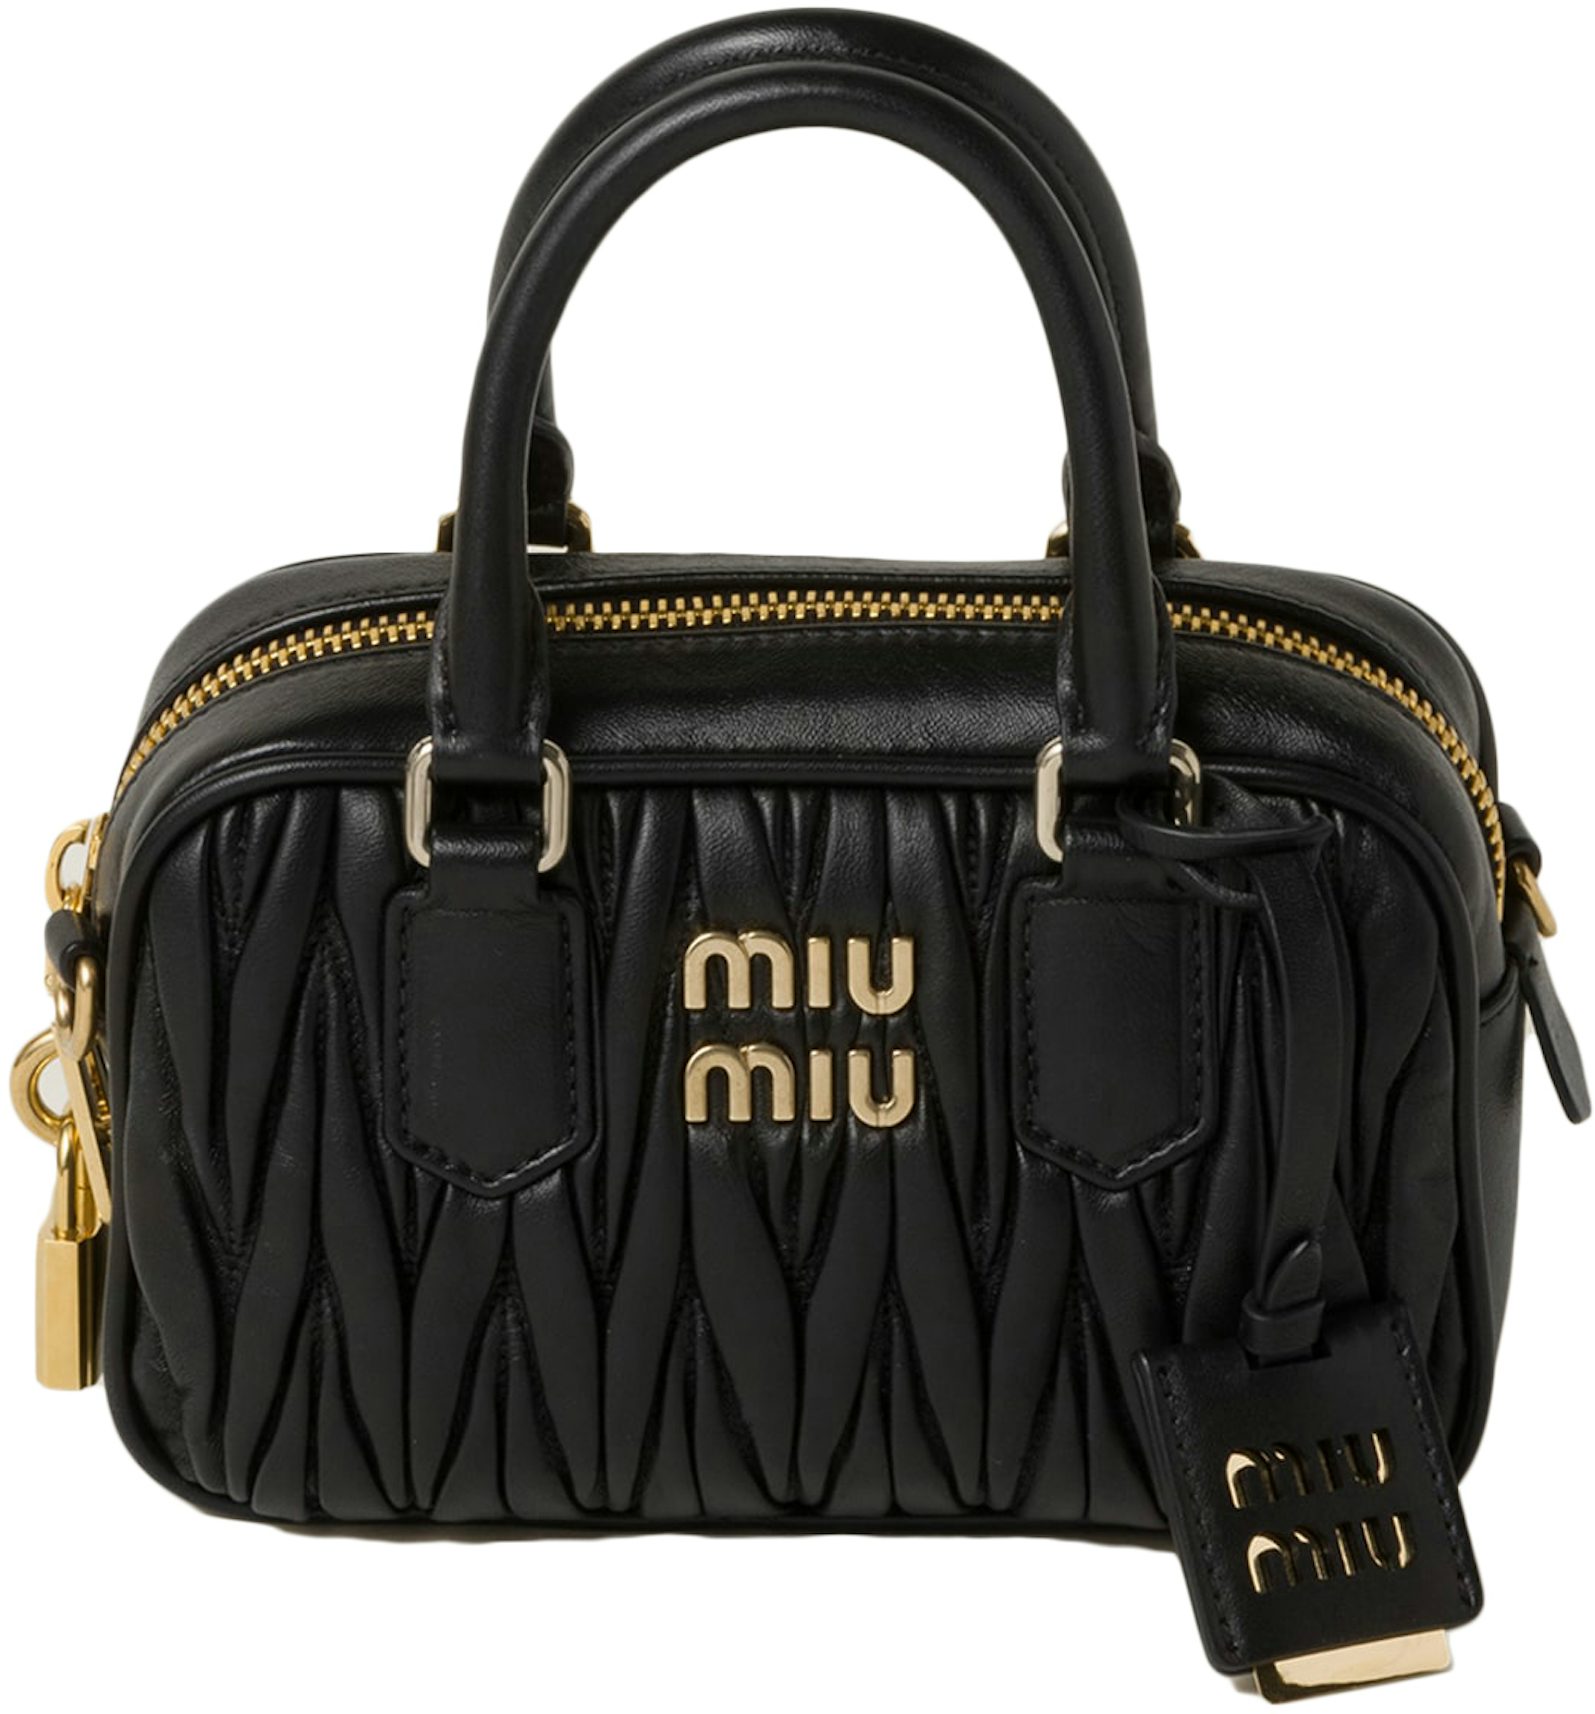 Miu Miu Woman Black Nappa Leather Mini Shoulder Bag